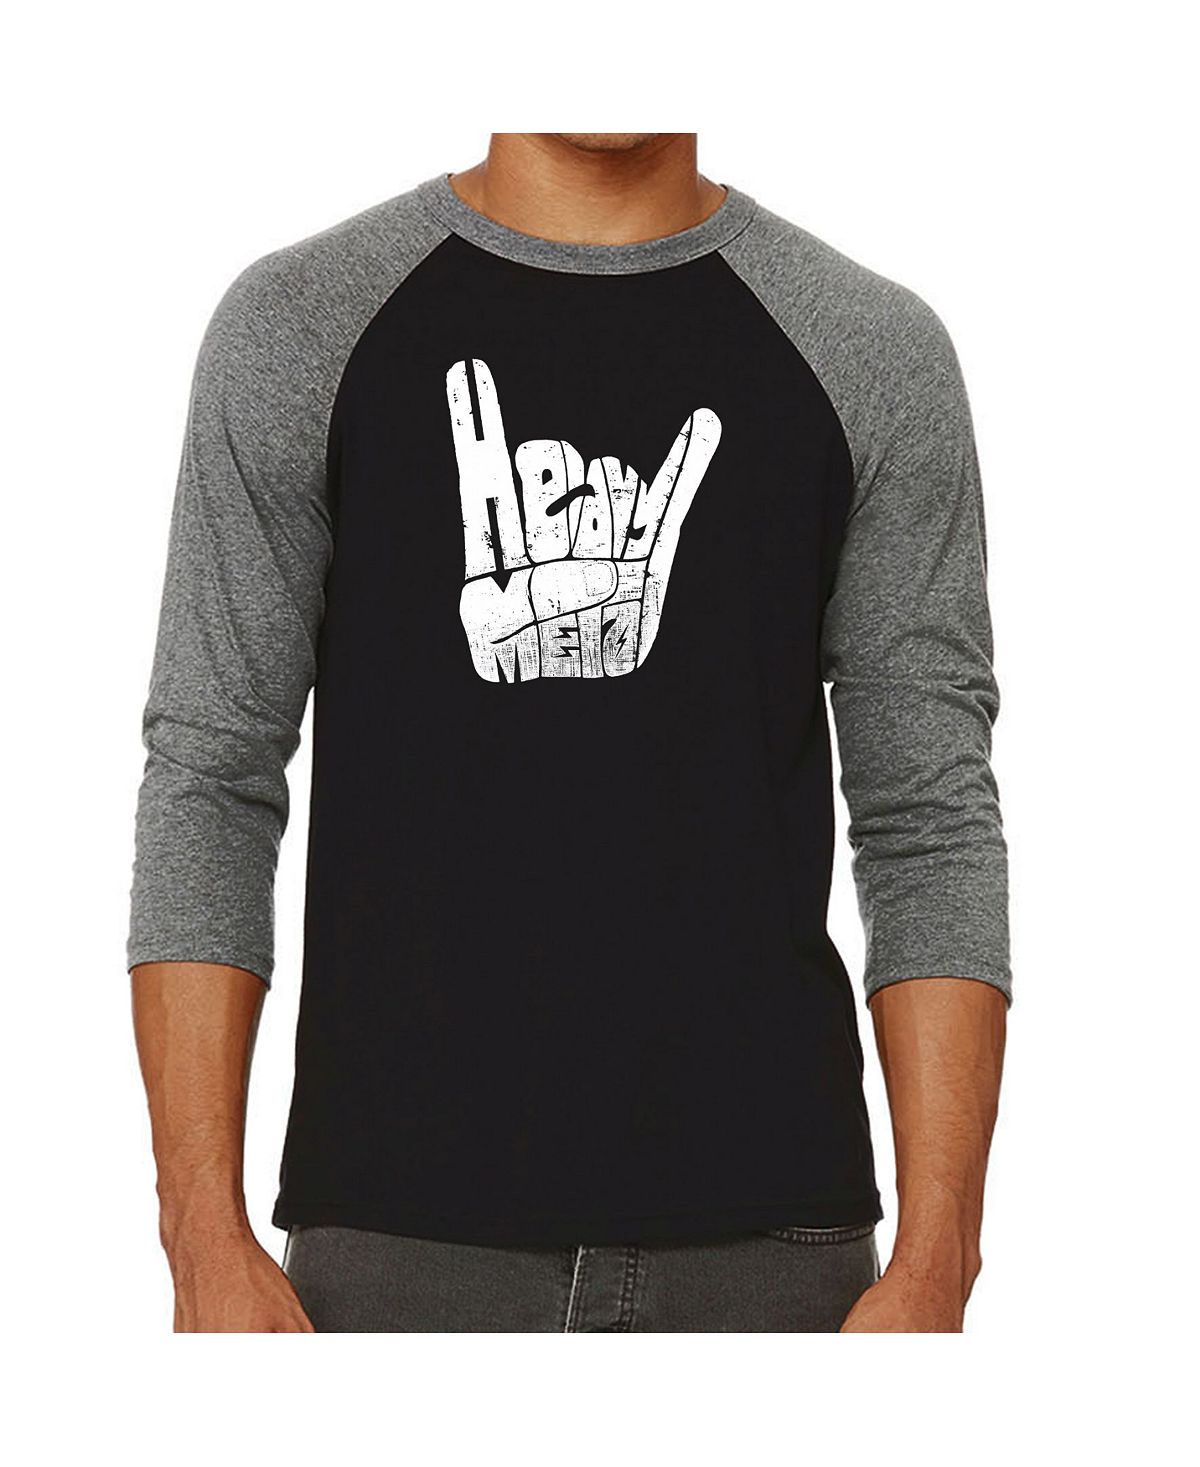 Мужская футболка с надписью «хэви-метал» и регланом word art LA Pop Art, серый